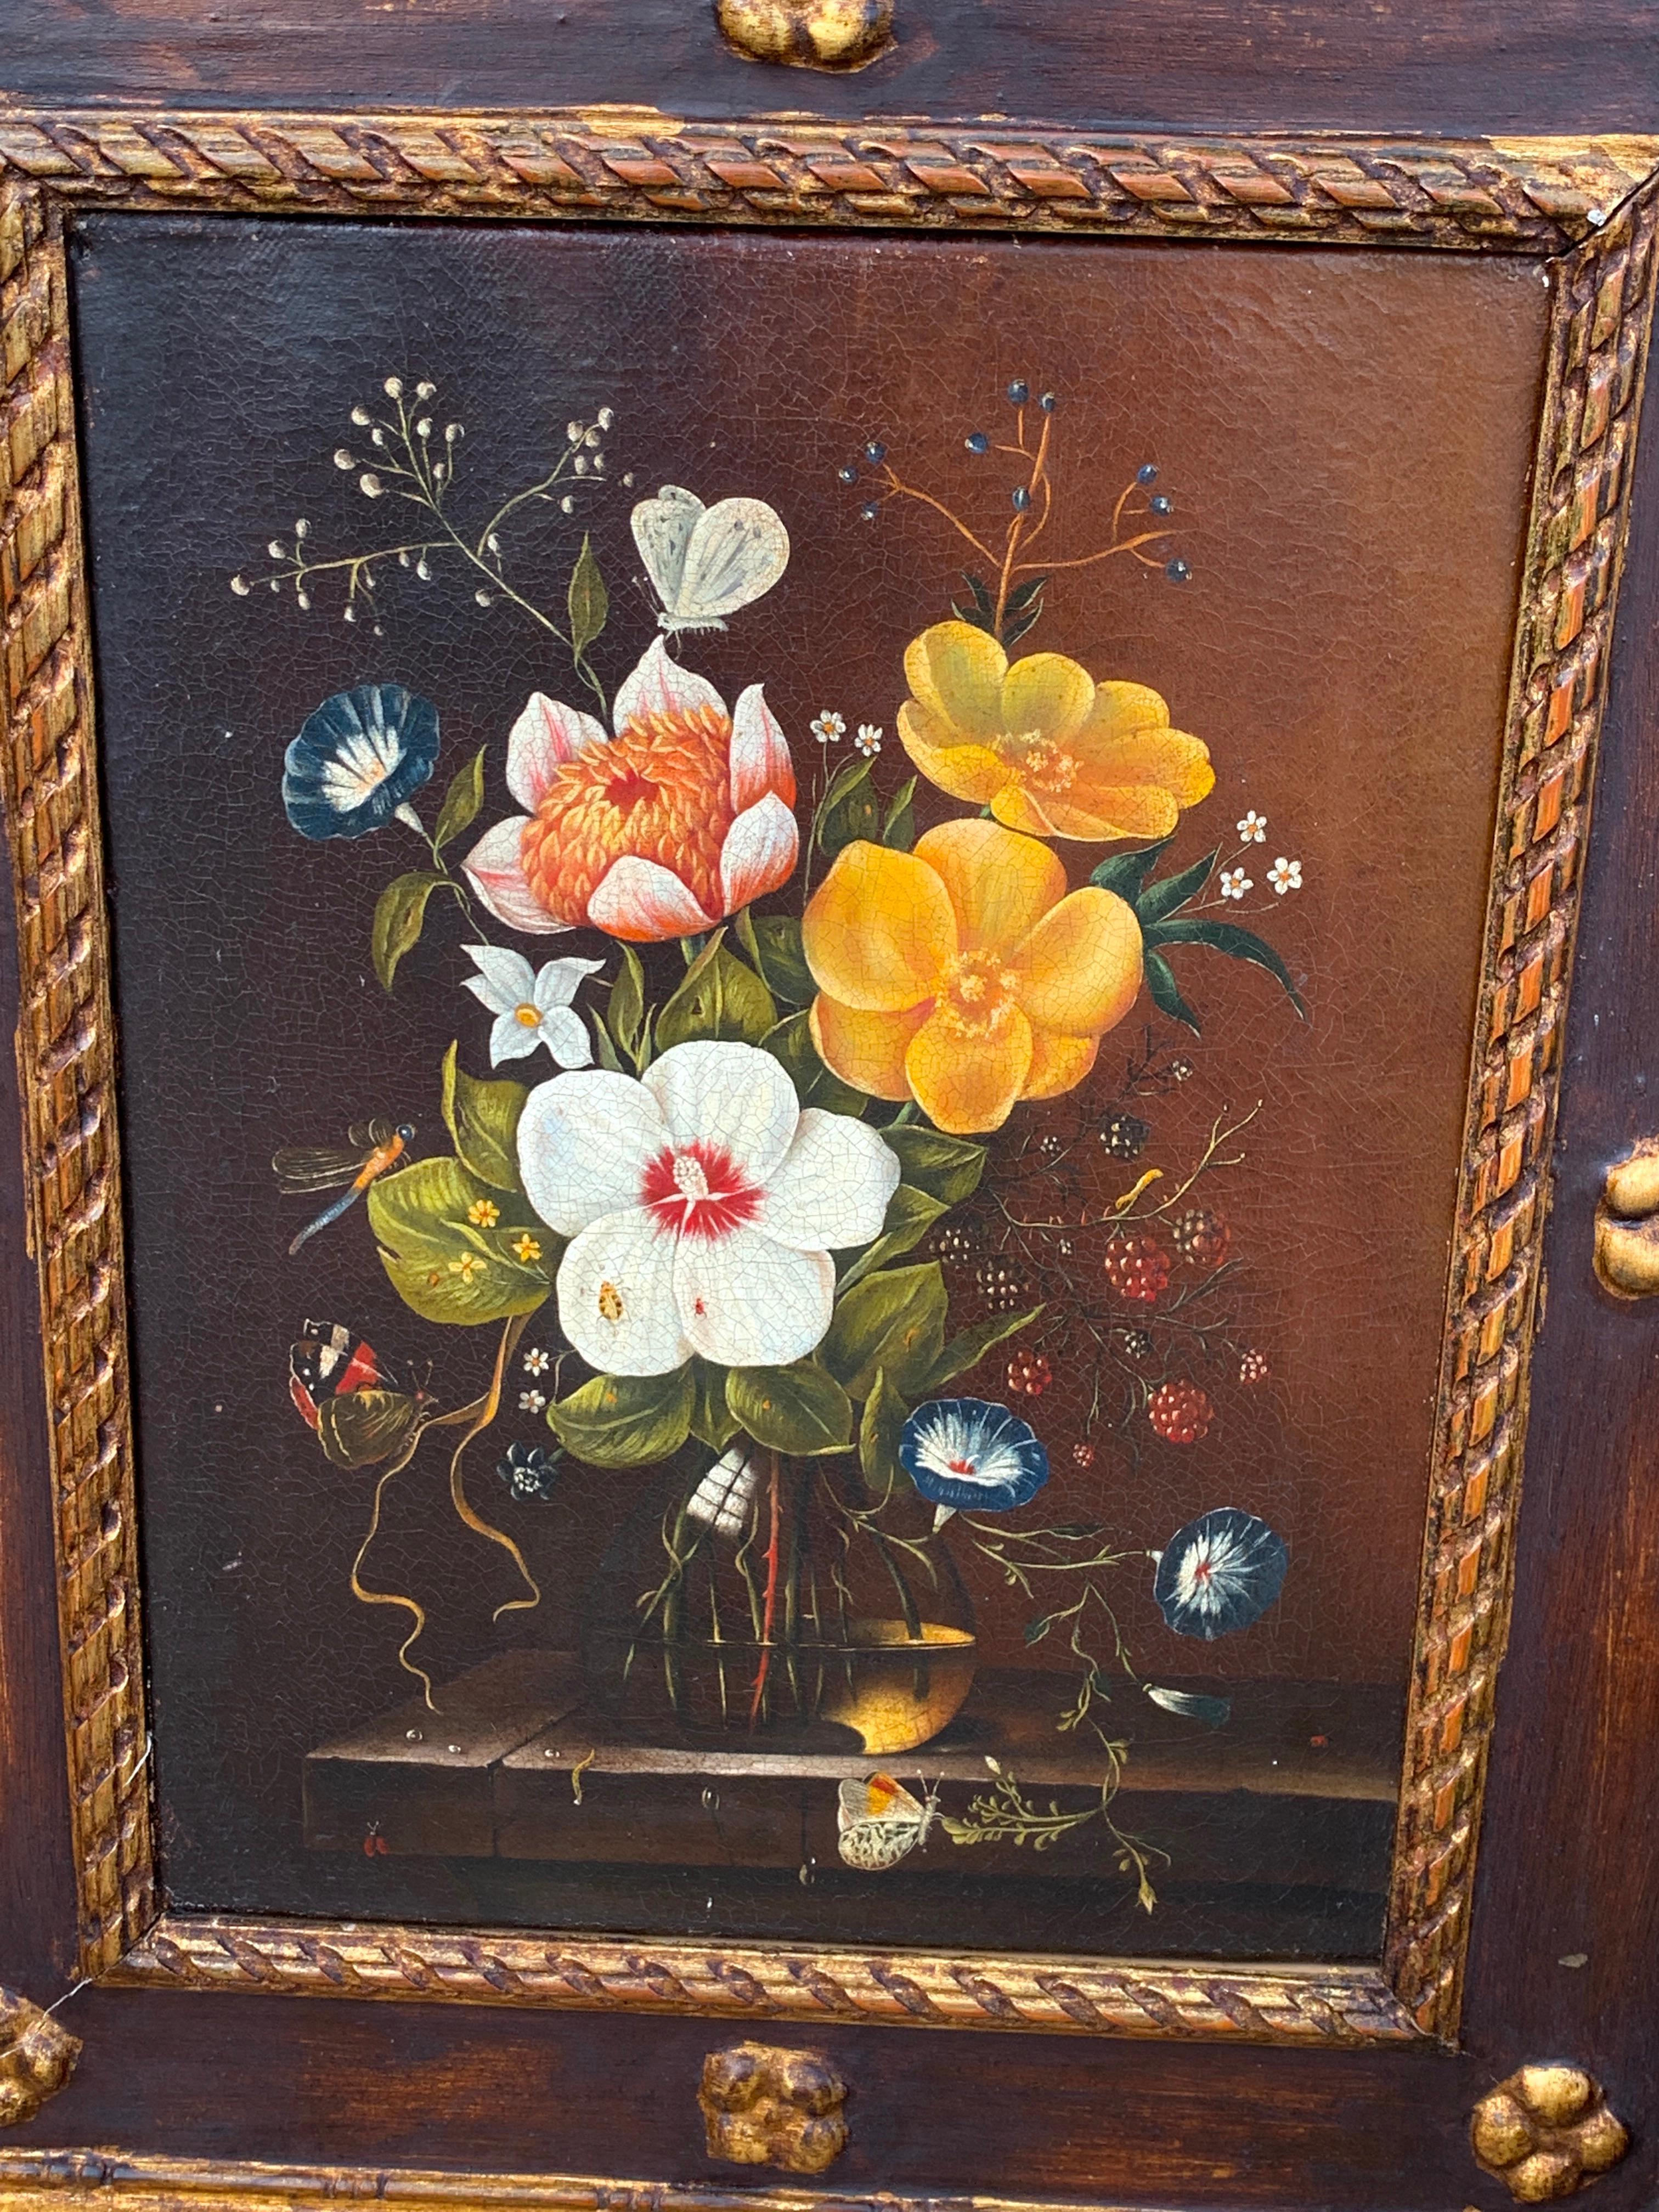 Ein Paar englische Blumenstillleben im Stil von Cecil Kennedy
Jedes Stück ist realistisch im Stil des britischen Künstlers Cecil Kennedy (1905-1997) gemalt, mit Blumen und verschiedenen Schmetterlingen und Insekten. Vorzeichenlos
Öl auf Leinwand